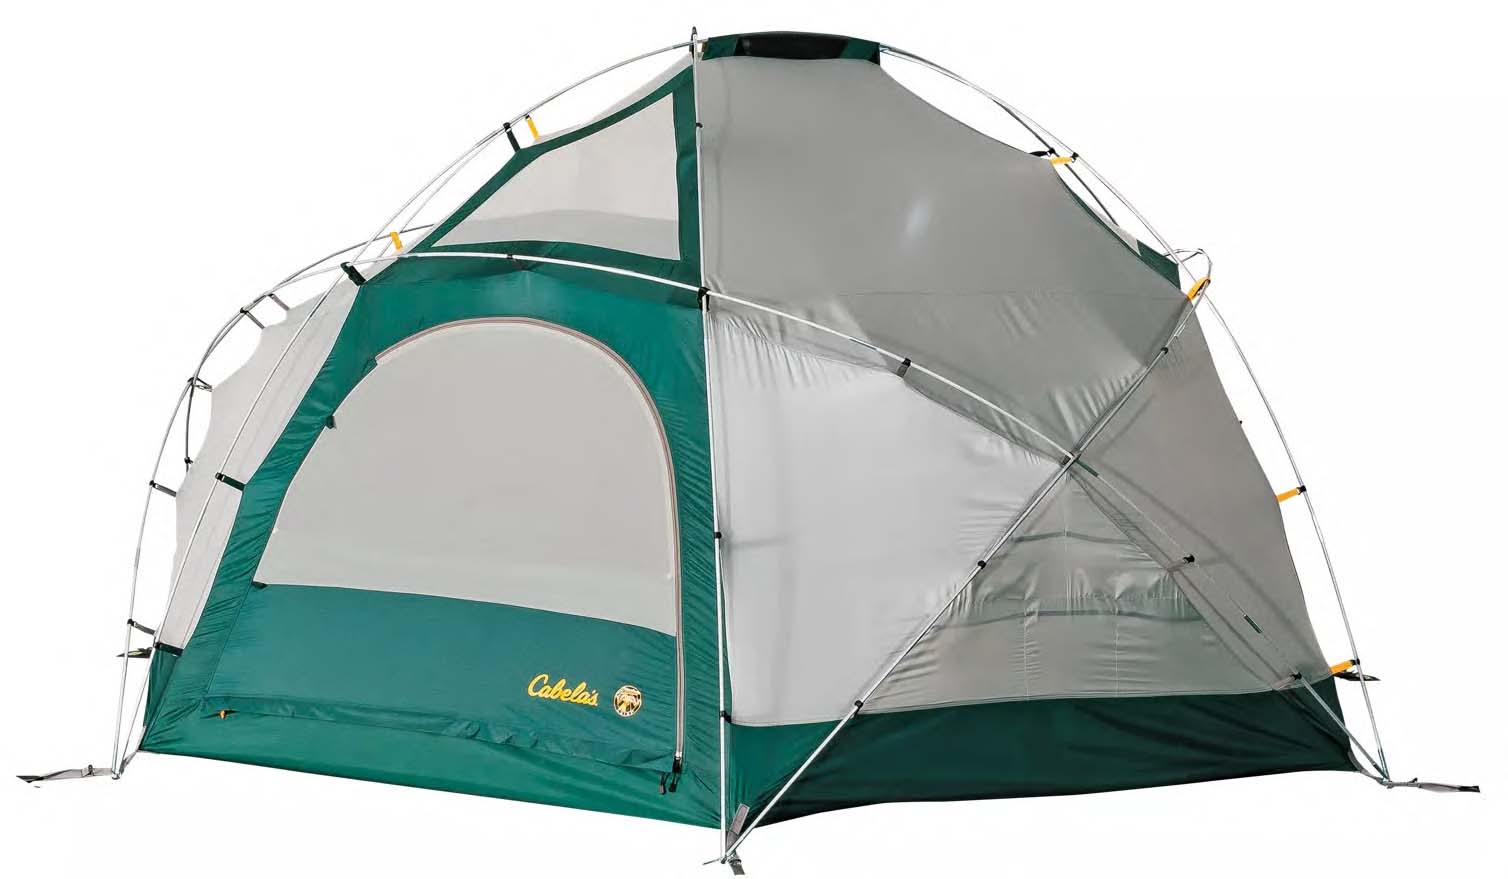 Cabela's Alaskan Guide camping tent